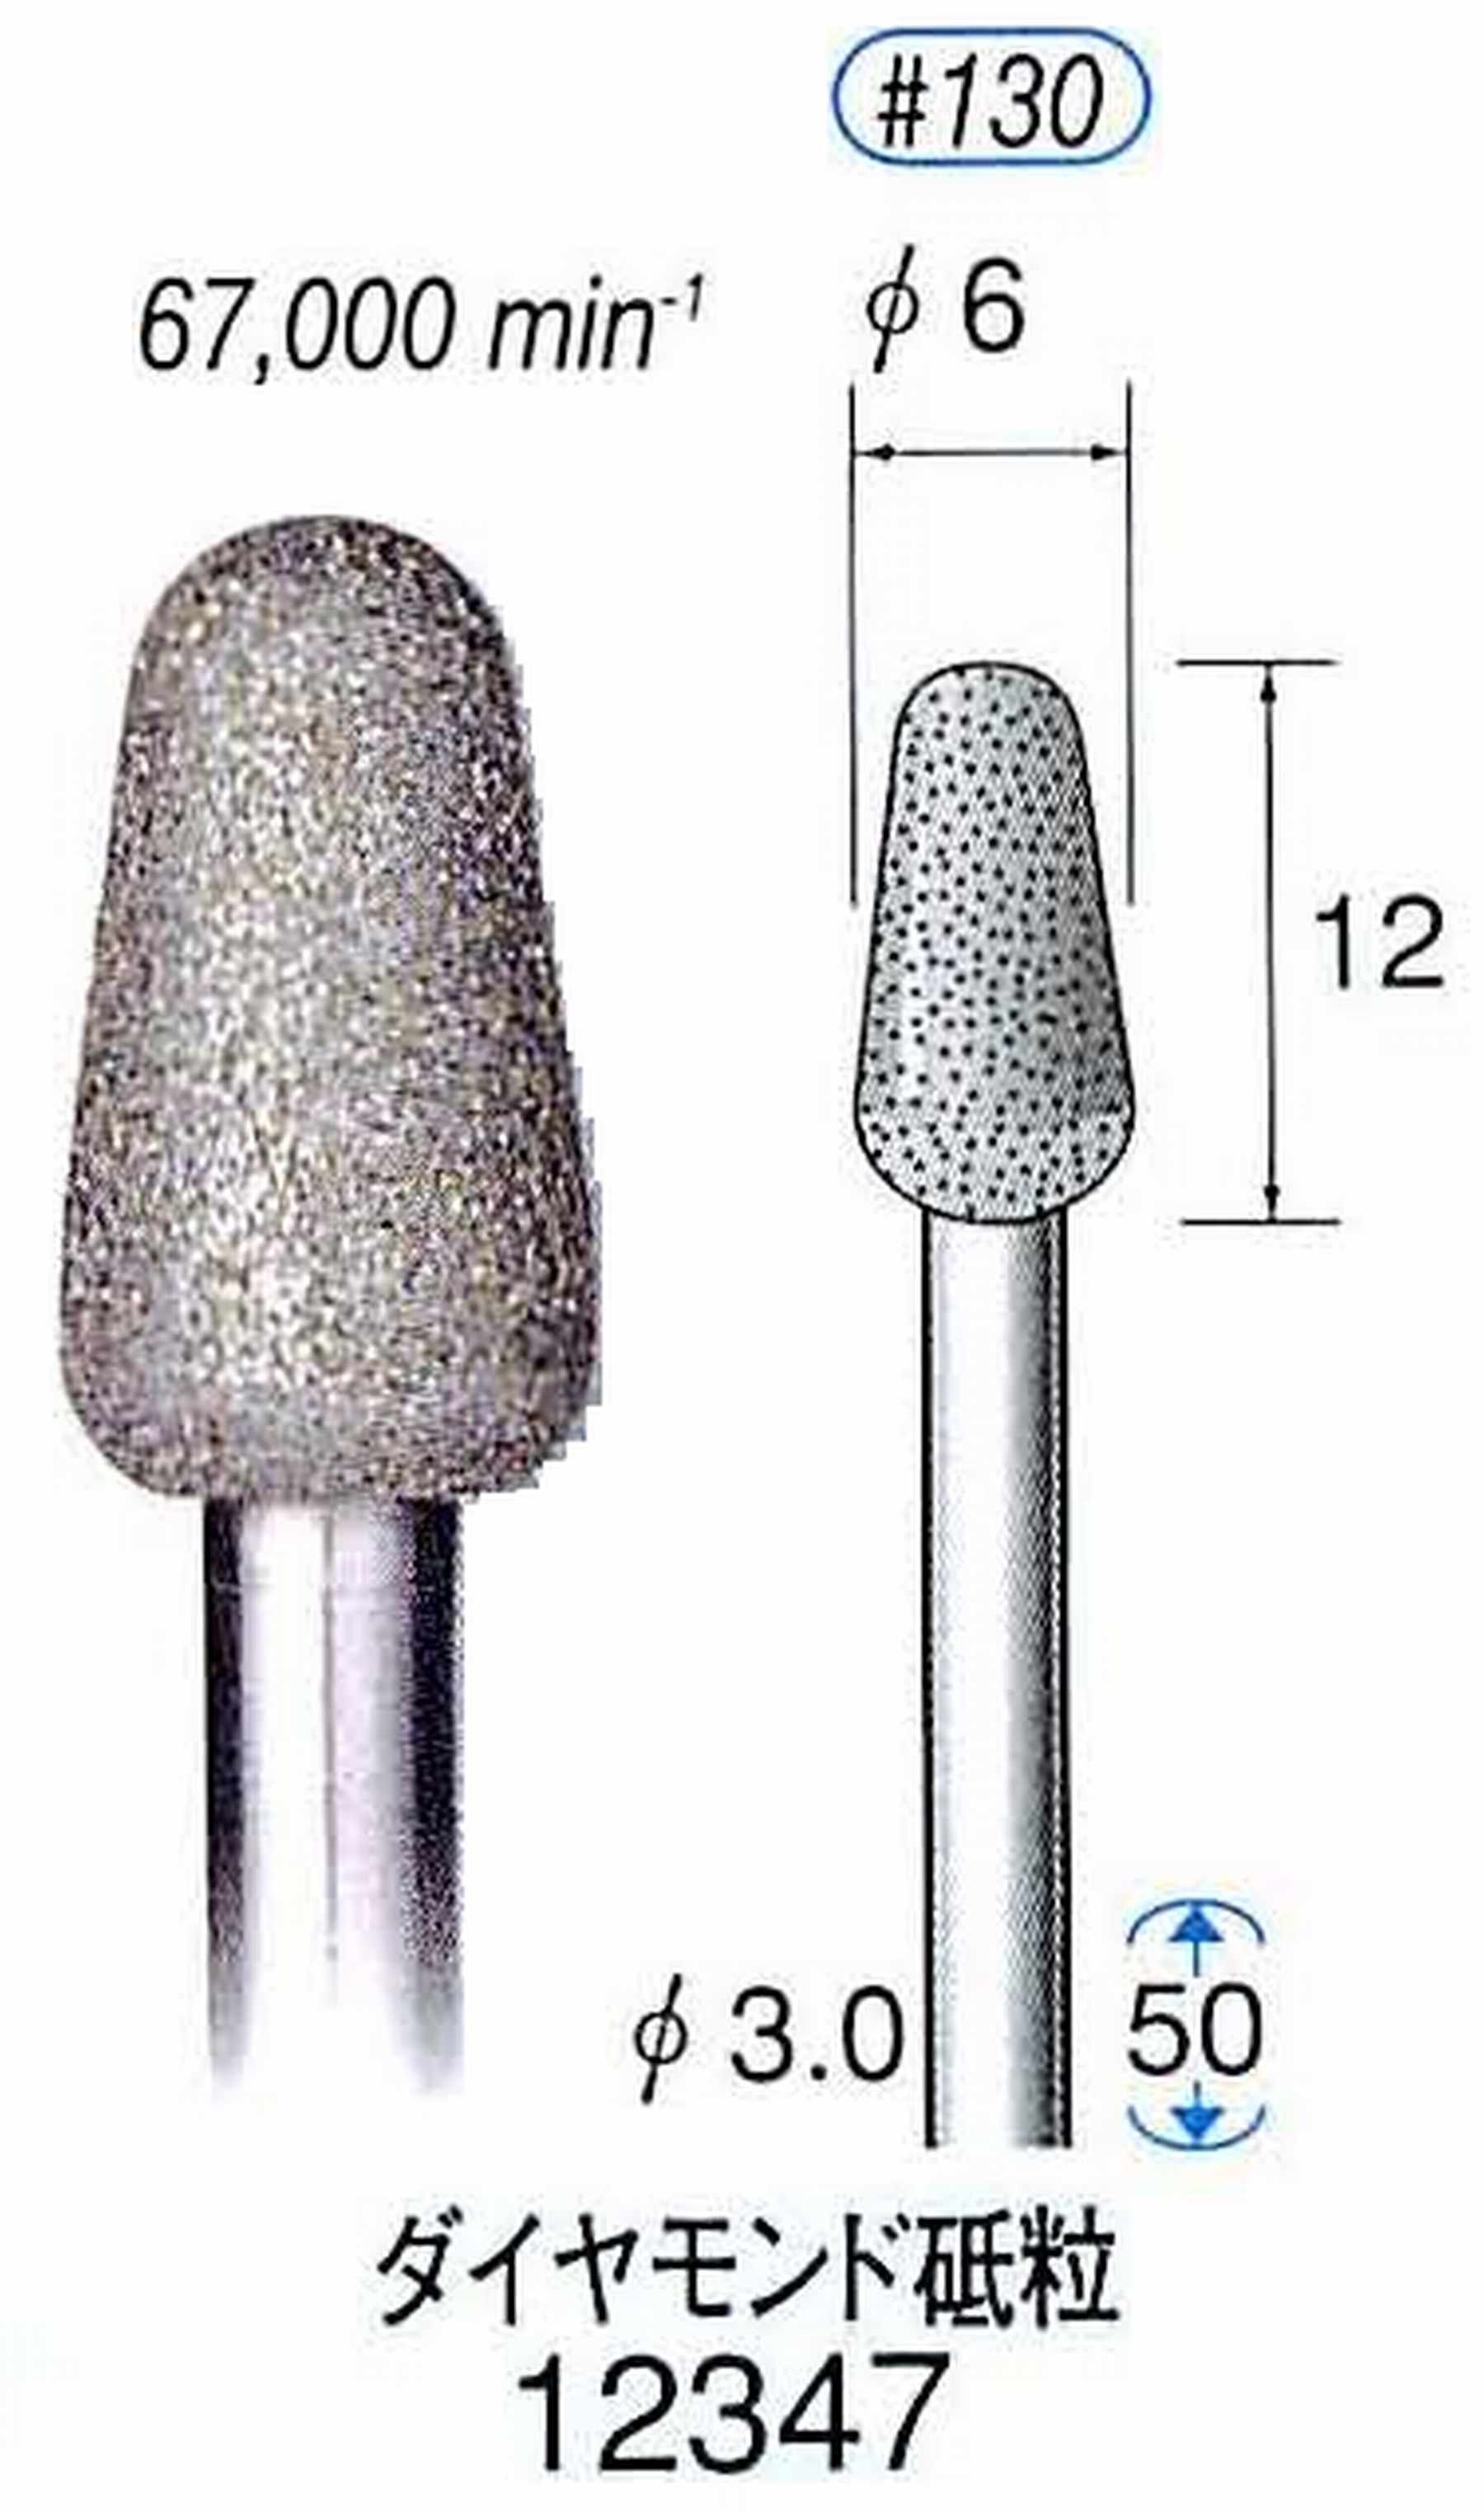 ナカニシ/NAKANISHI 電着ダイヤモンド ダイヤモンド砥粒 軸径(シャンク)φ3.0mm 12347